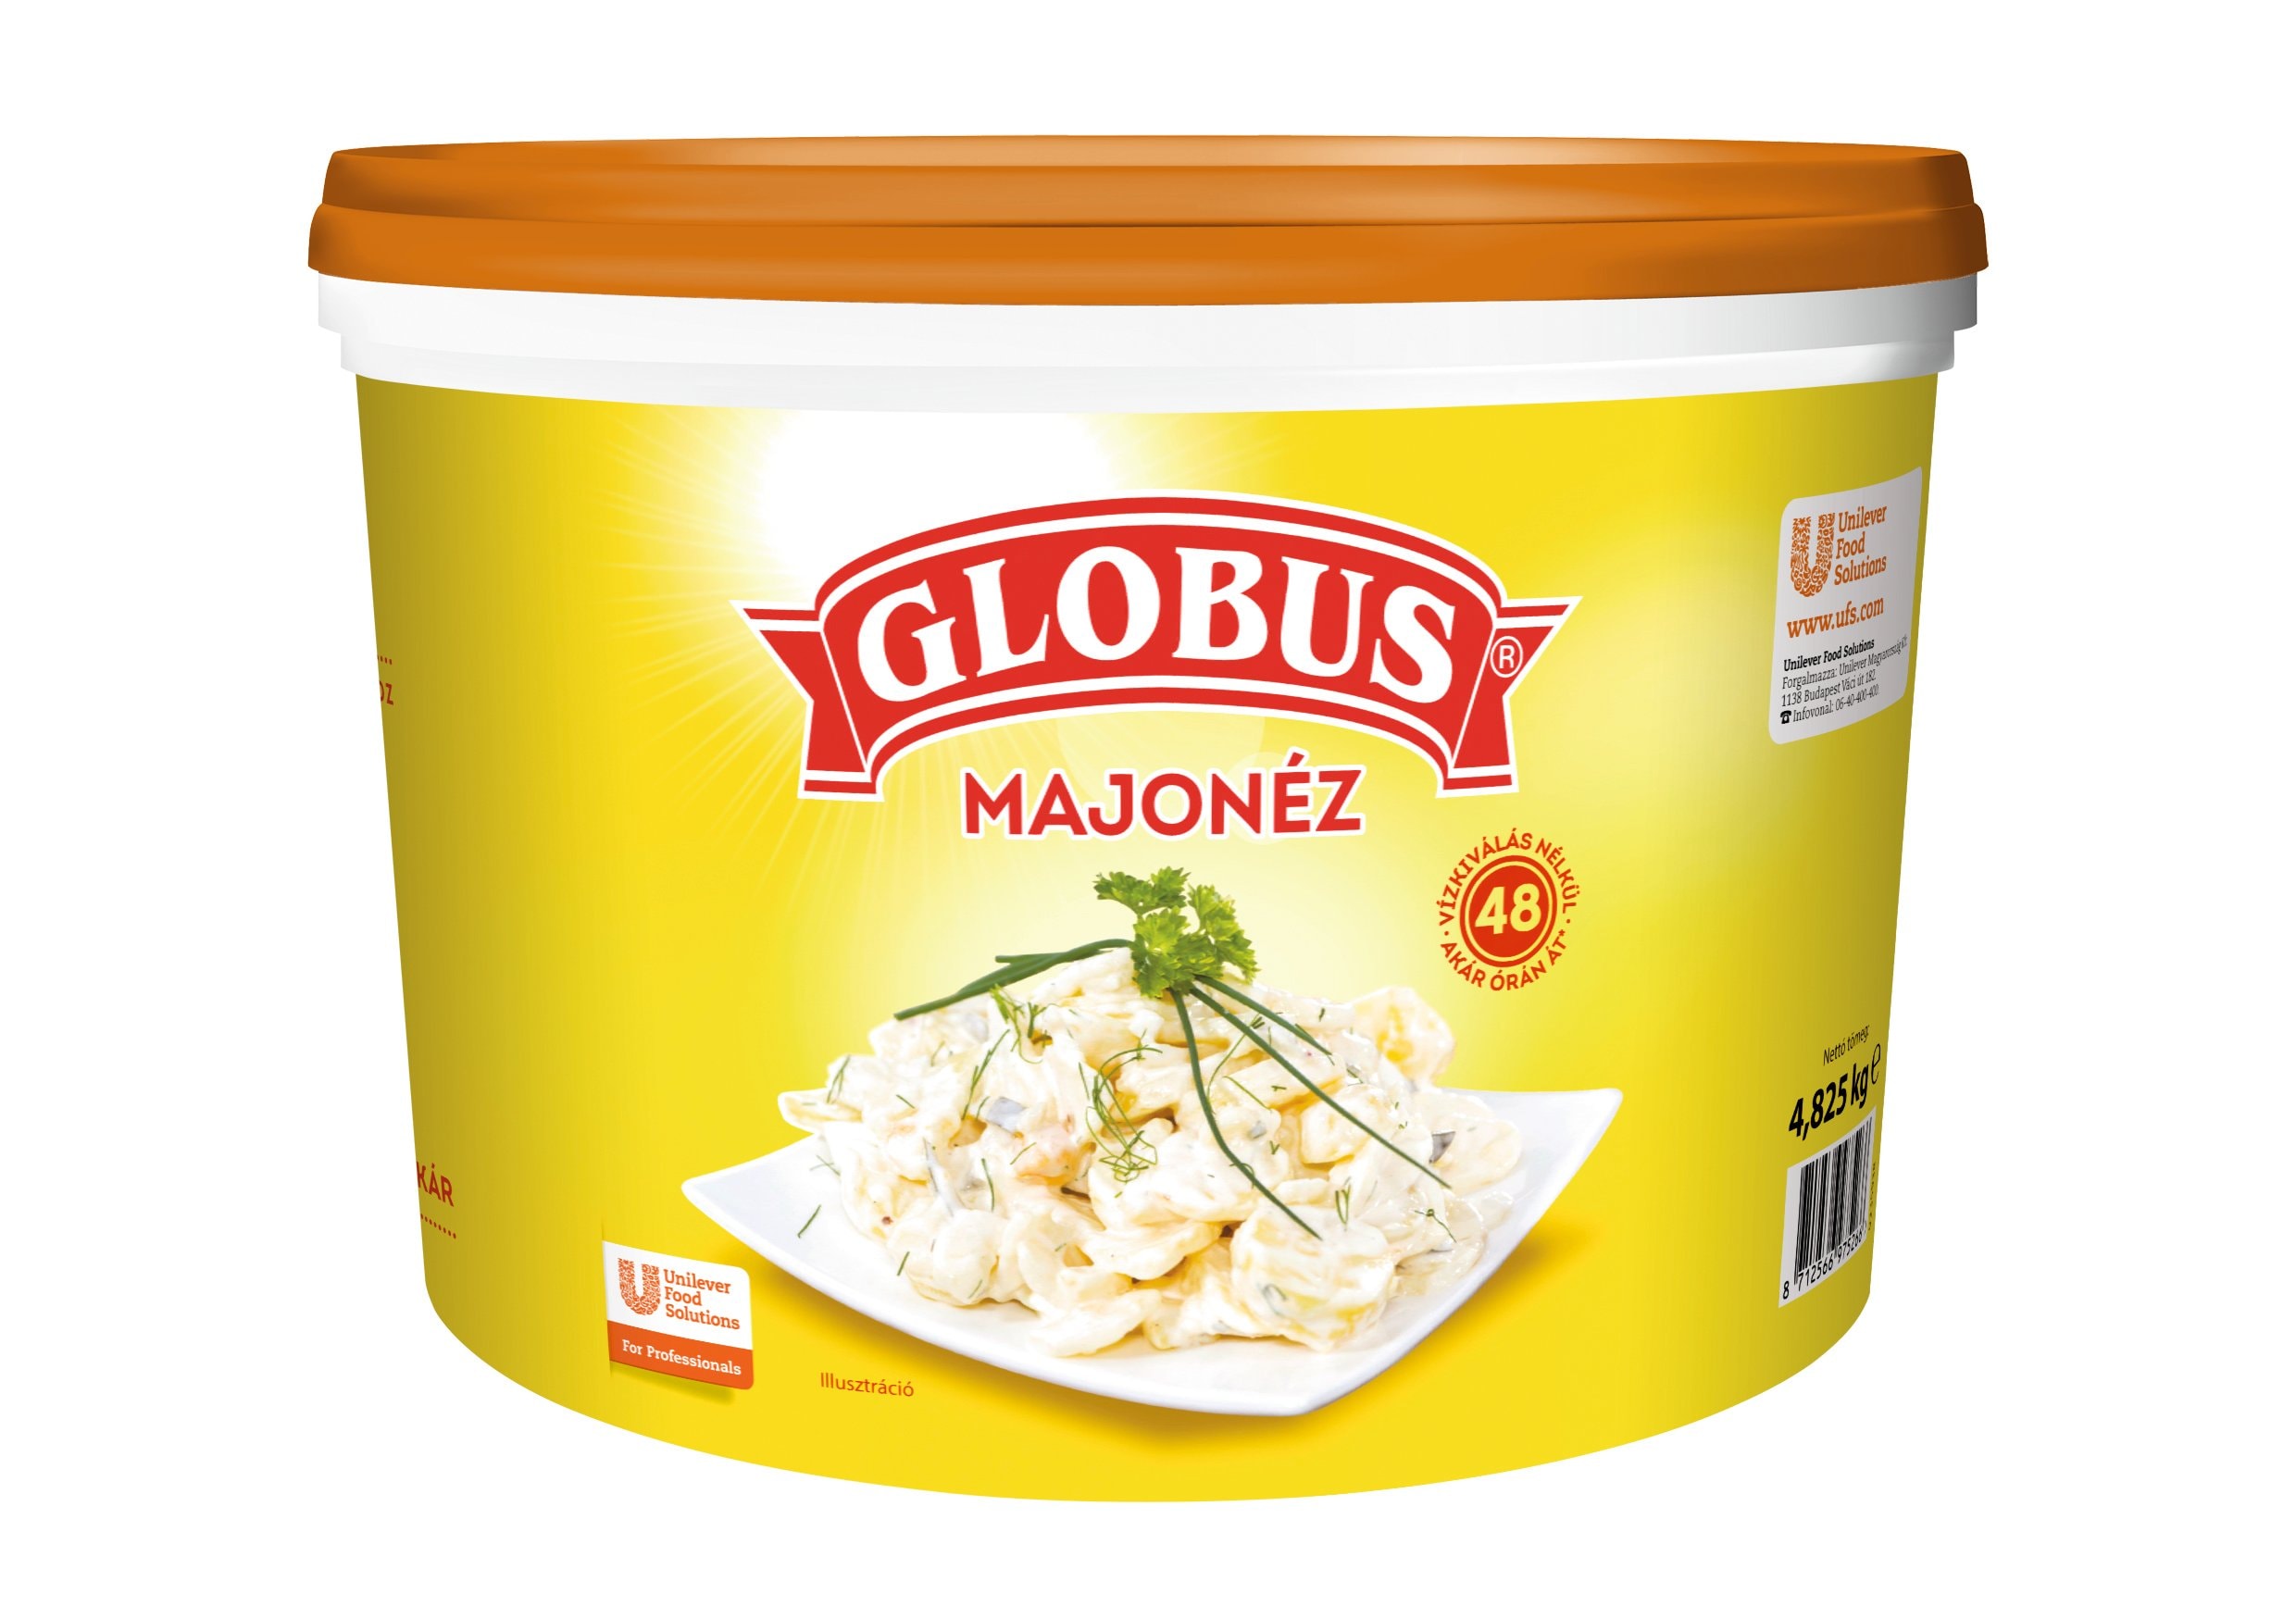 GLOBUS Majonéz 4,825 kg - Biztosra kell mennem, hogy a majonézem minden alkalommal megfelelően szolgálja igényeimet.